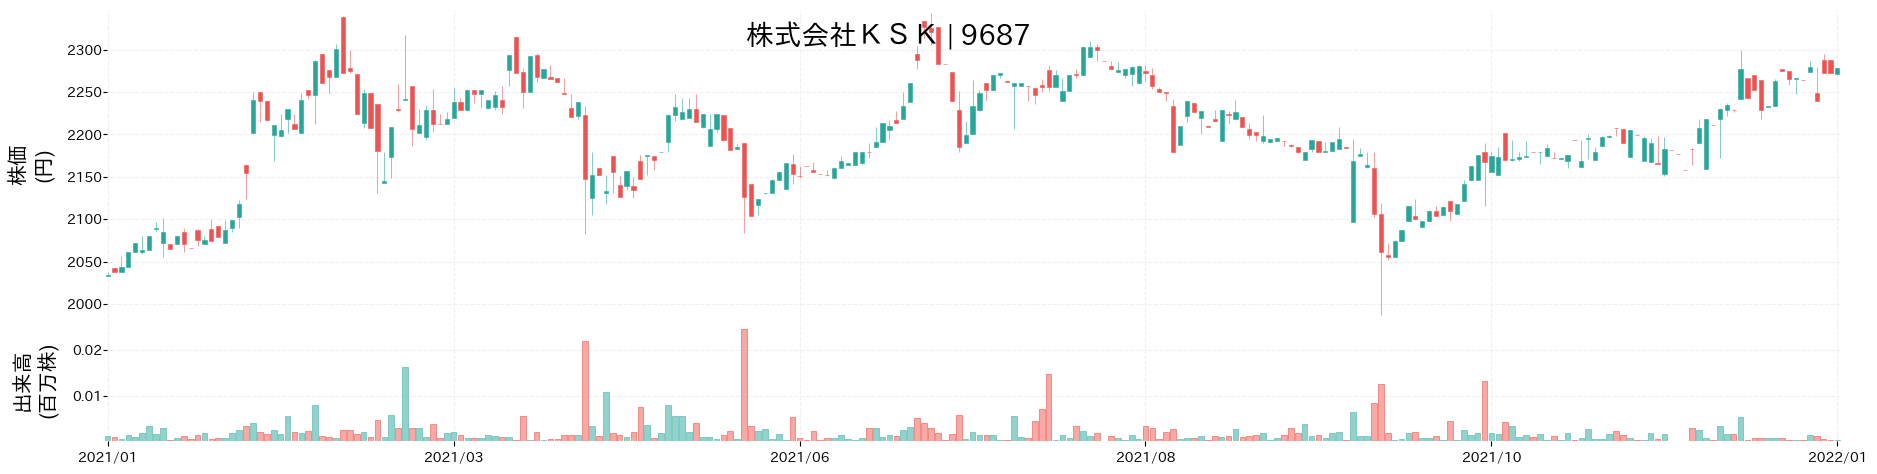 KSKの株価推移(2021)